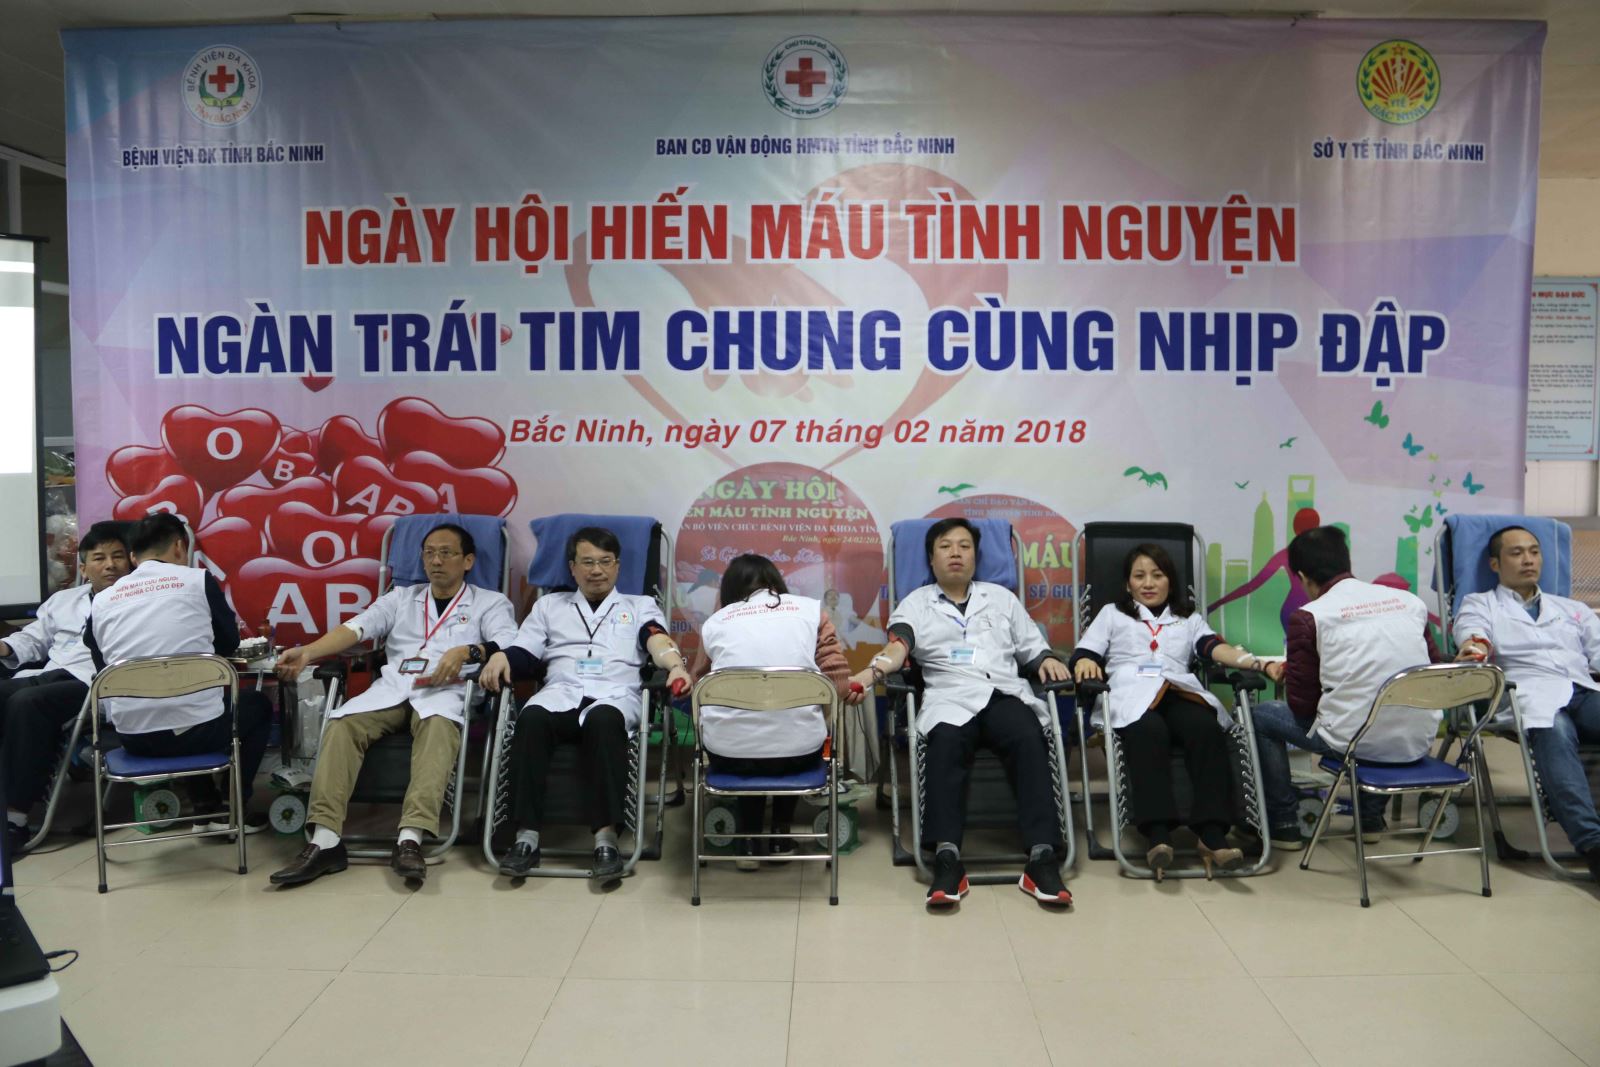 Ngày hội hiến máu tình nguyện “Ngàn trái tim, chung nhịp đập” năm 2018 tại Bệnh viện đa khoa Bắc Ninh